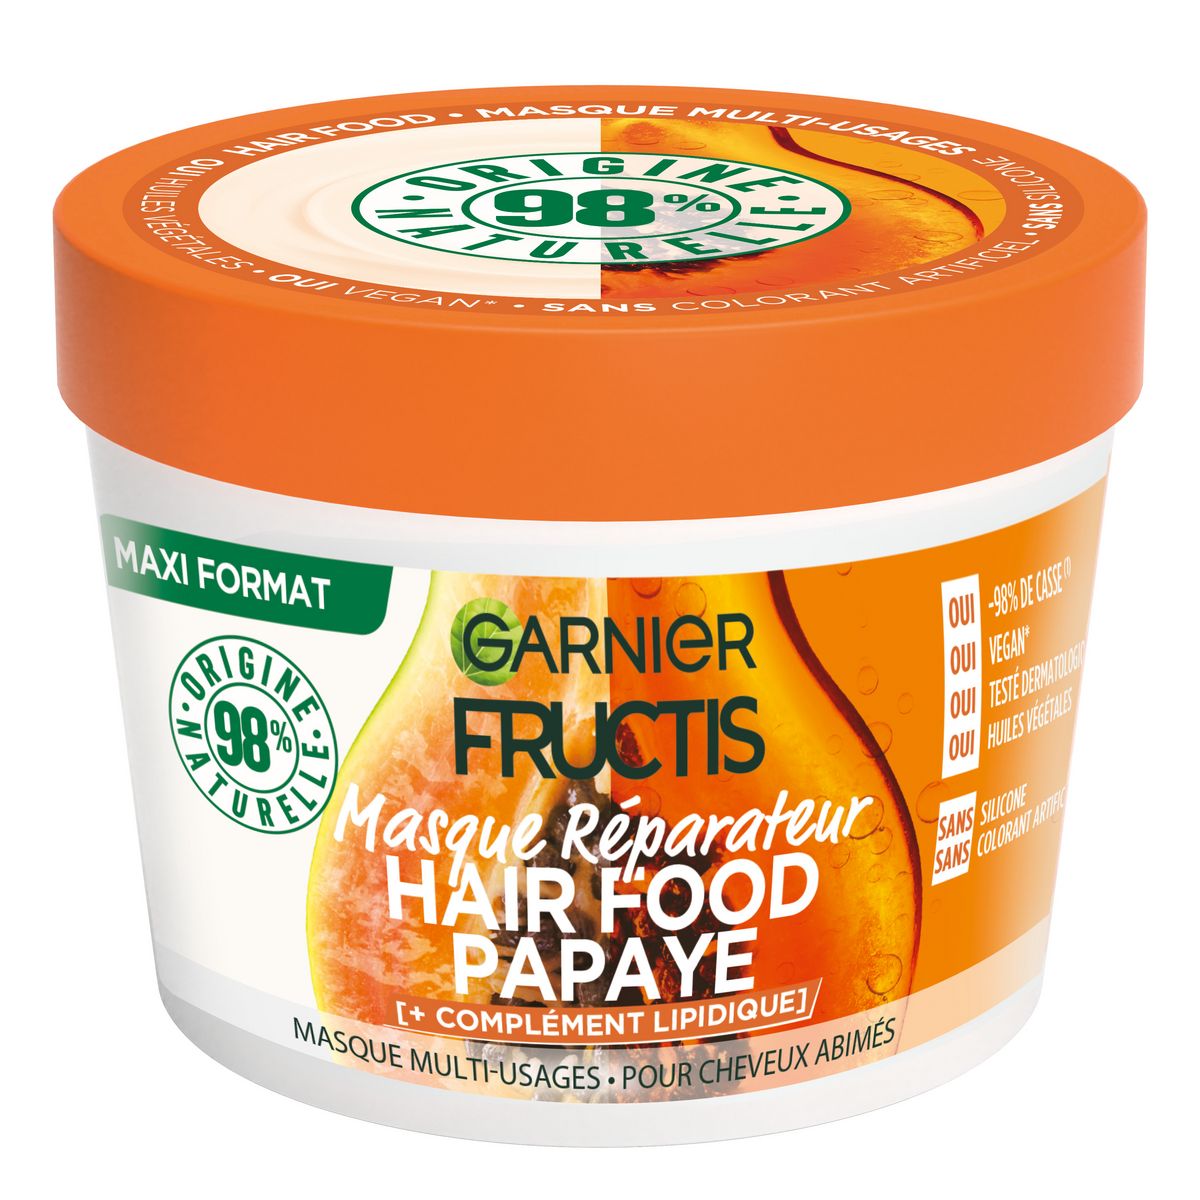 FRUCTIS Hair food masque réparateur papaye cheveux abîmés 390ml